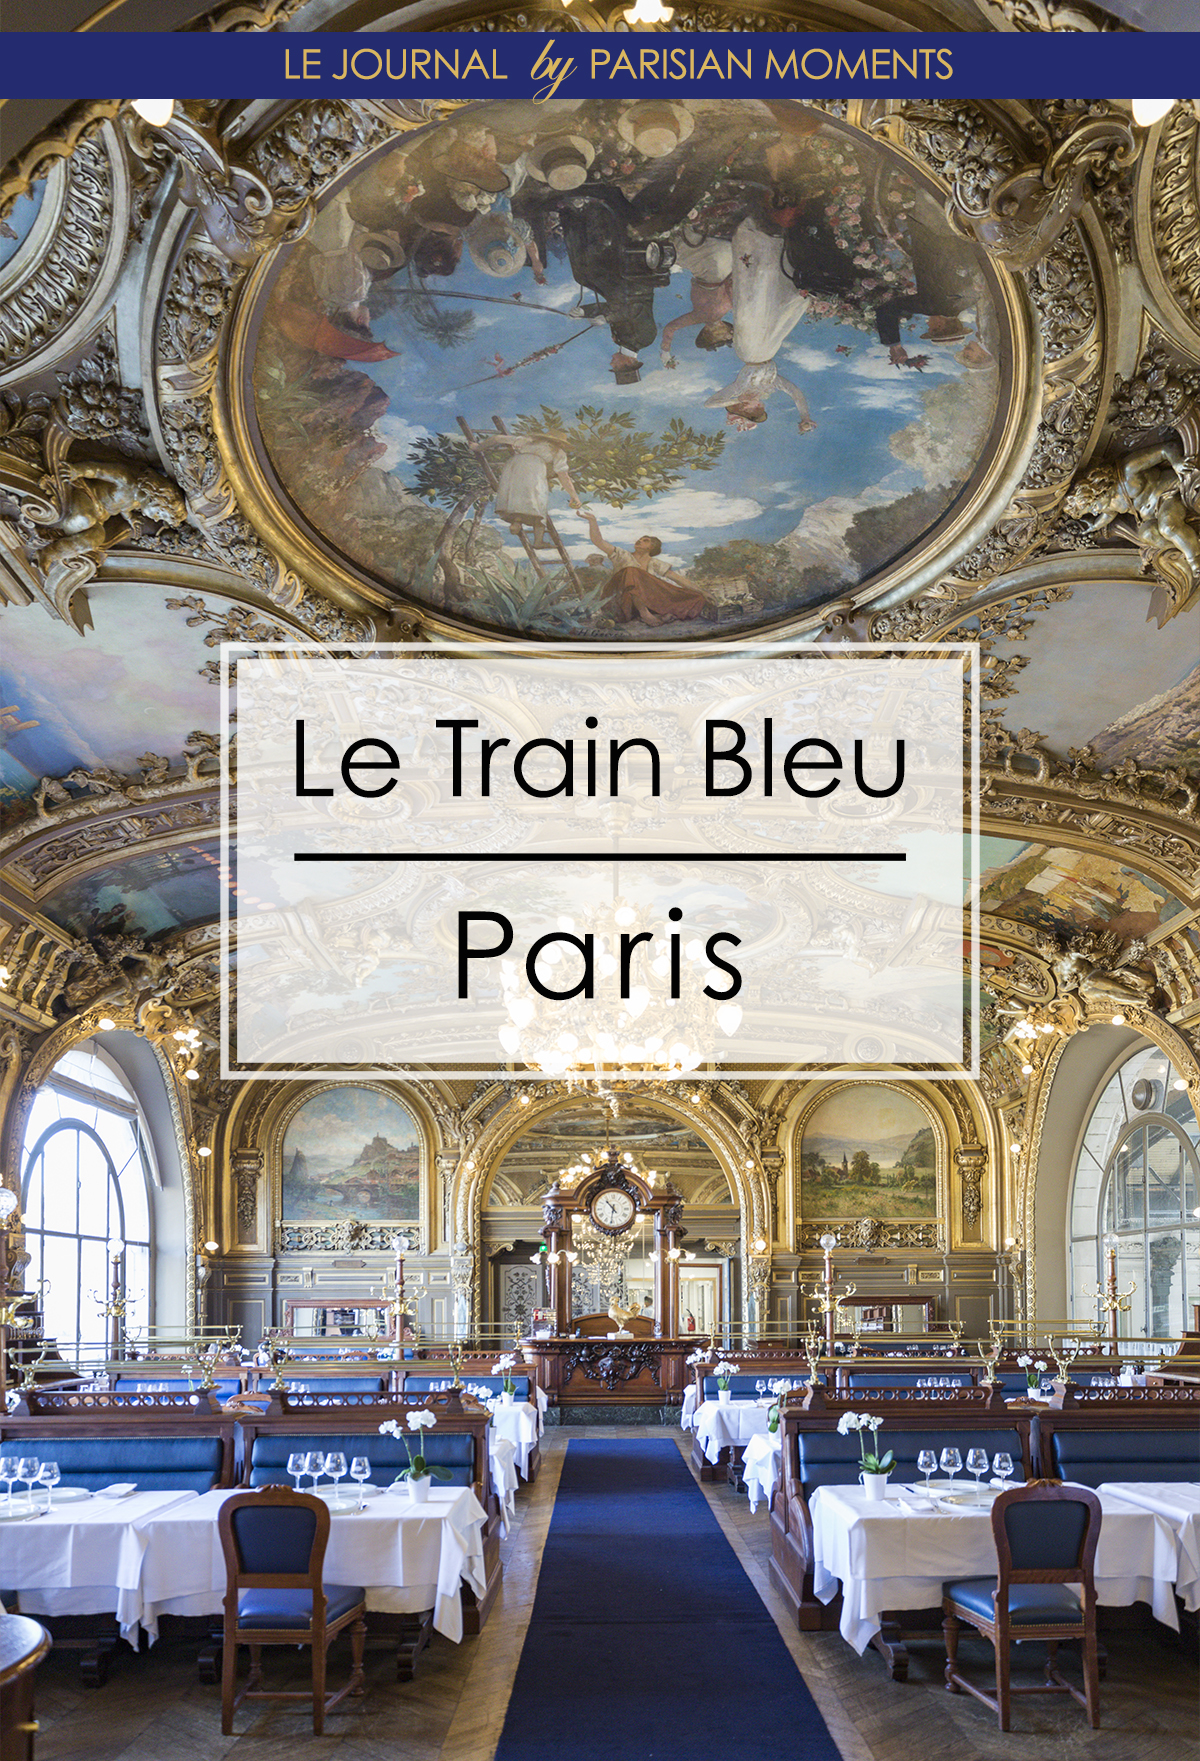 Paris's Train Bleu once again worth the trip